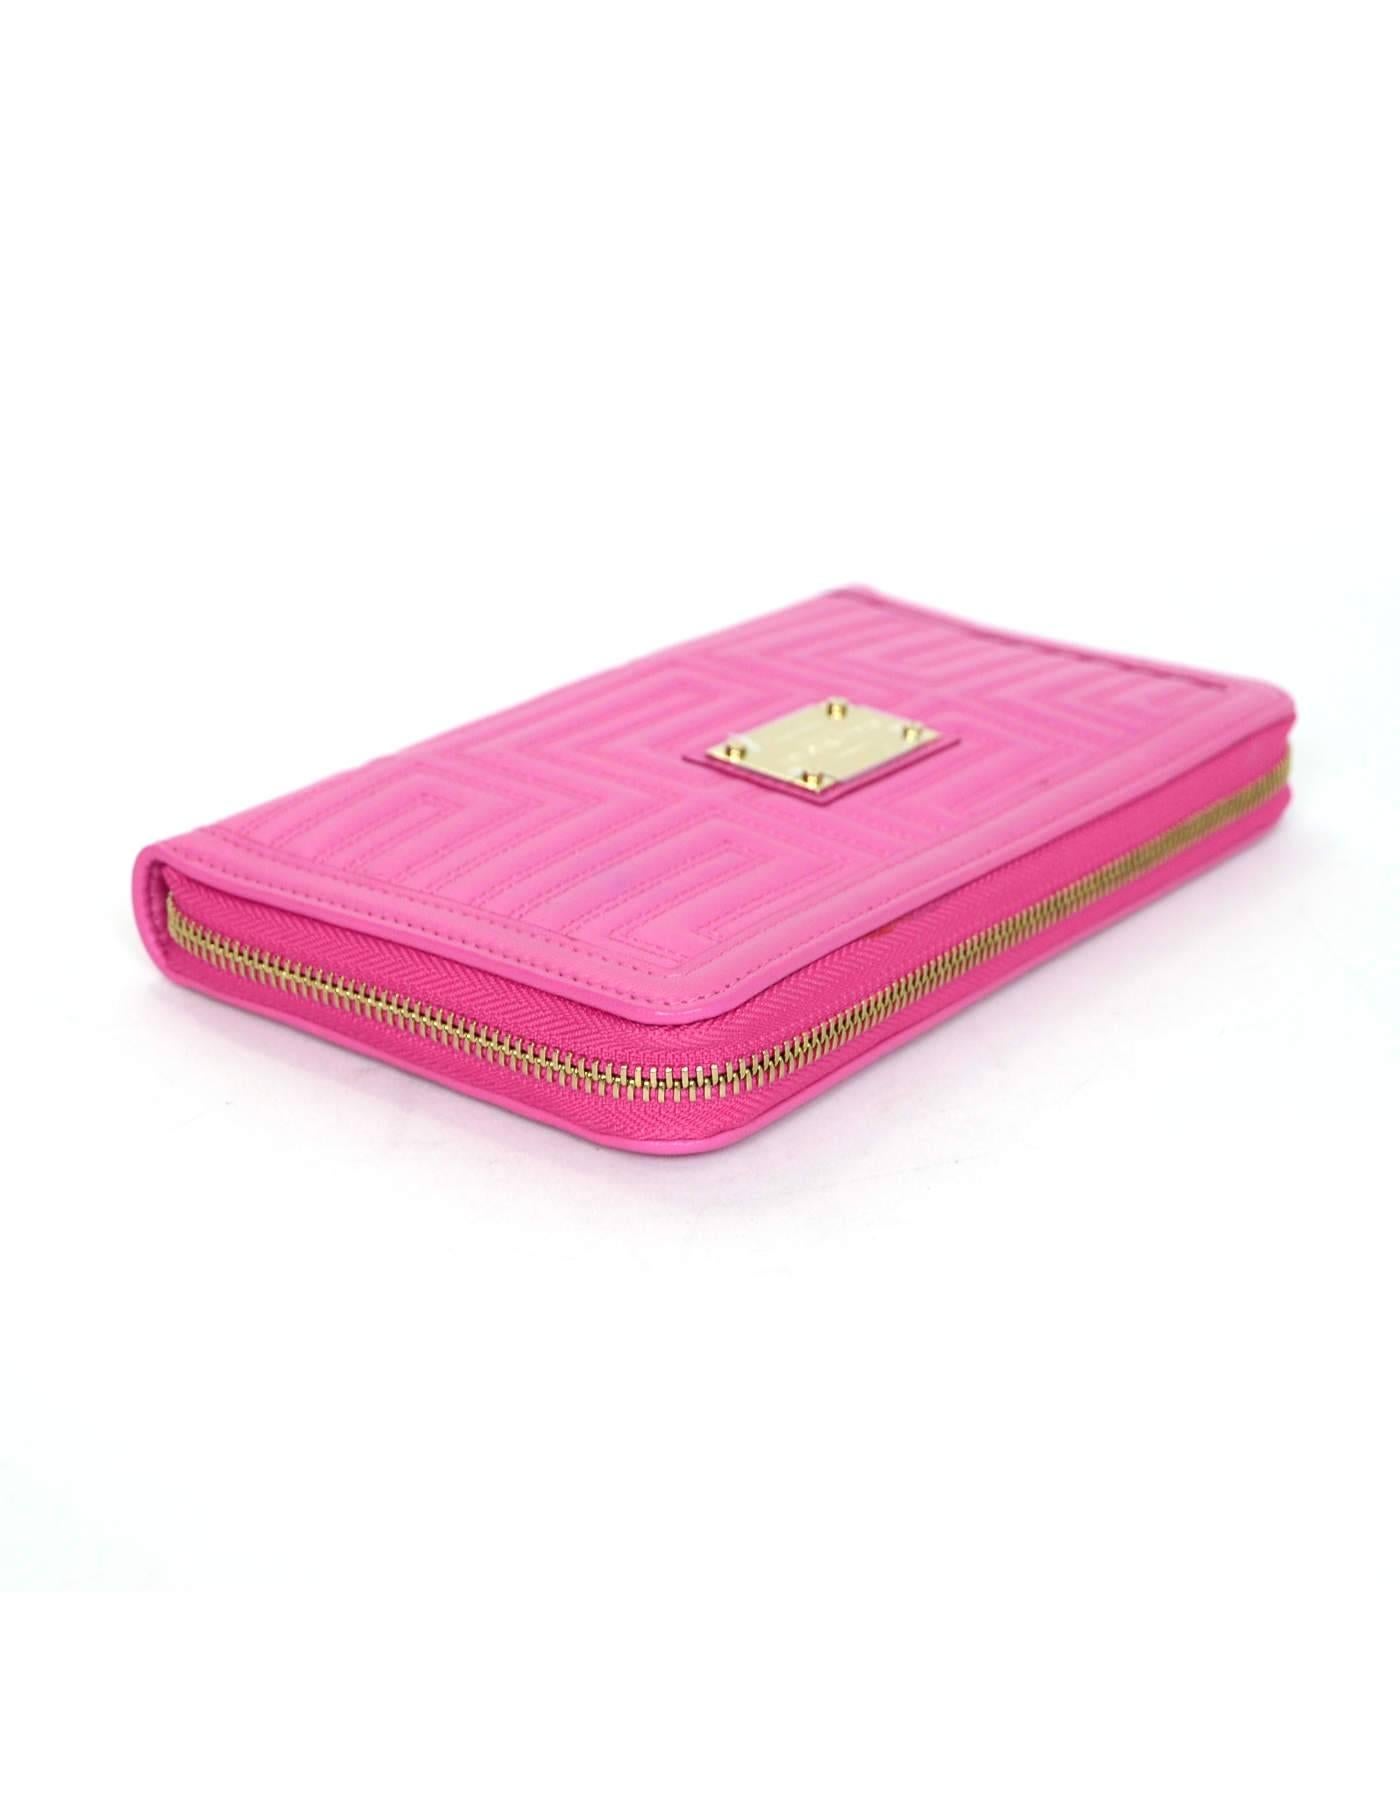 Versace Pink Leather Zip Around XL Wallet NIB  1